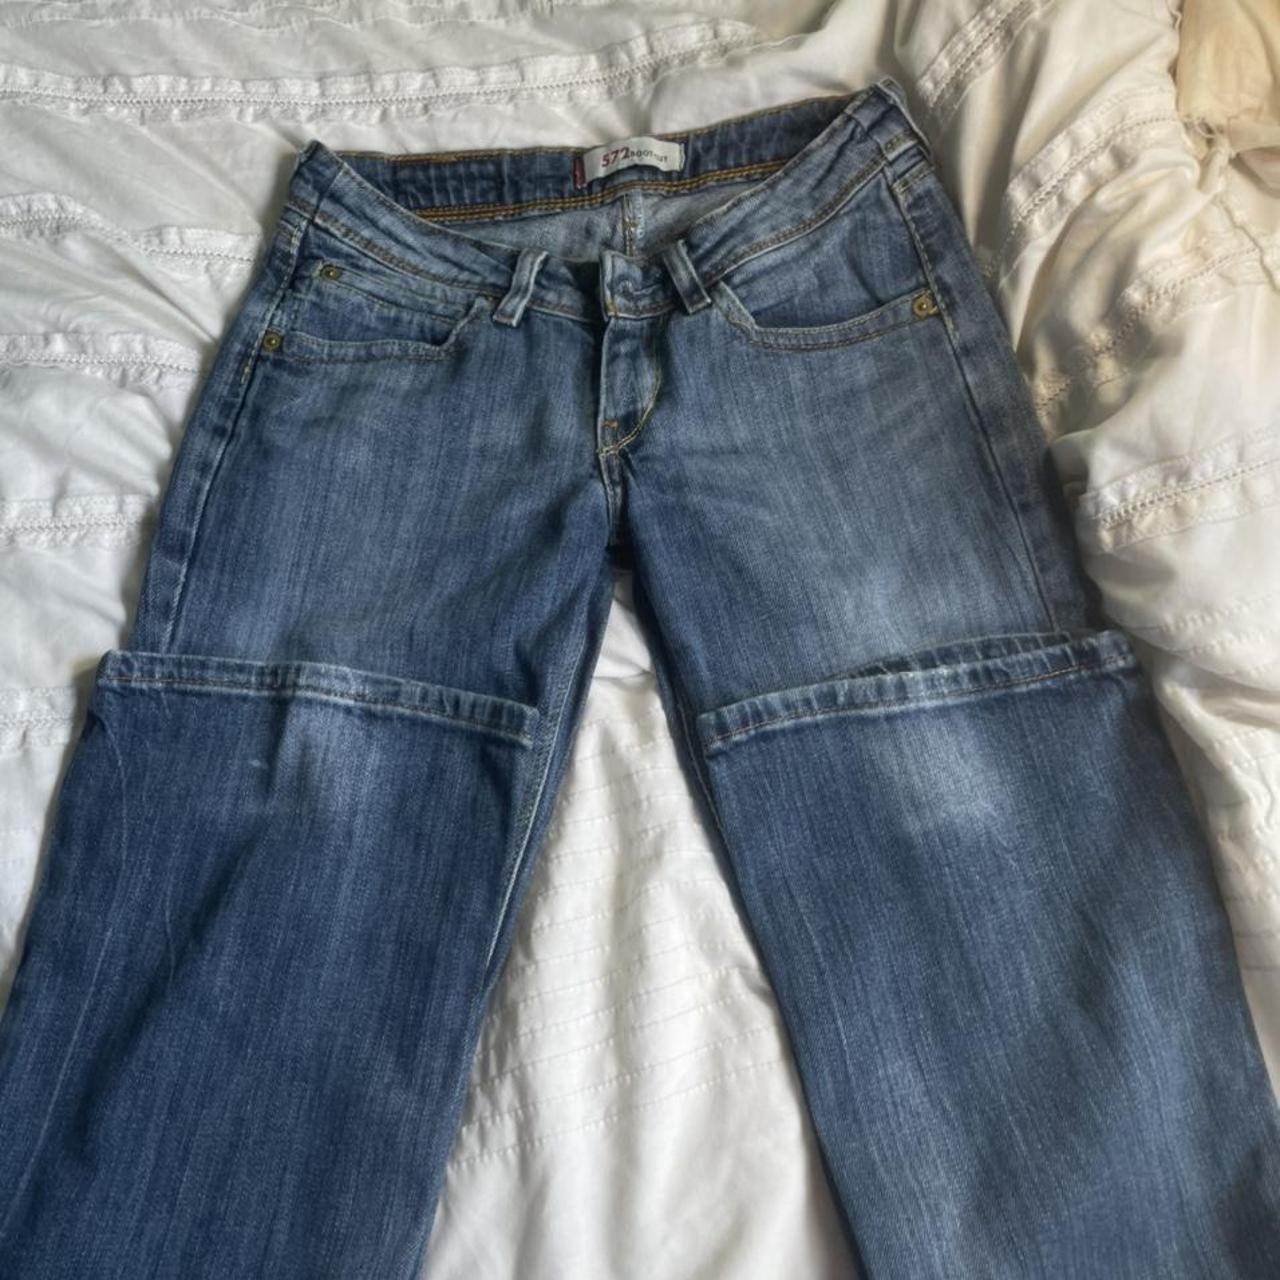 Vintage 572 Levi jeans Bootcut waist 27 length 30 - Depop